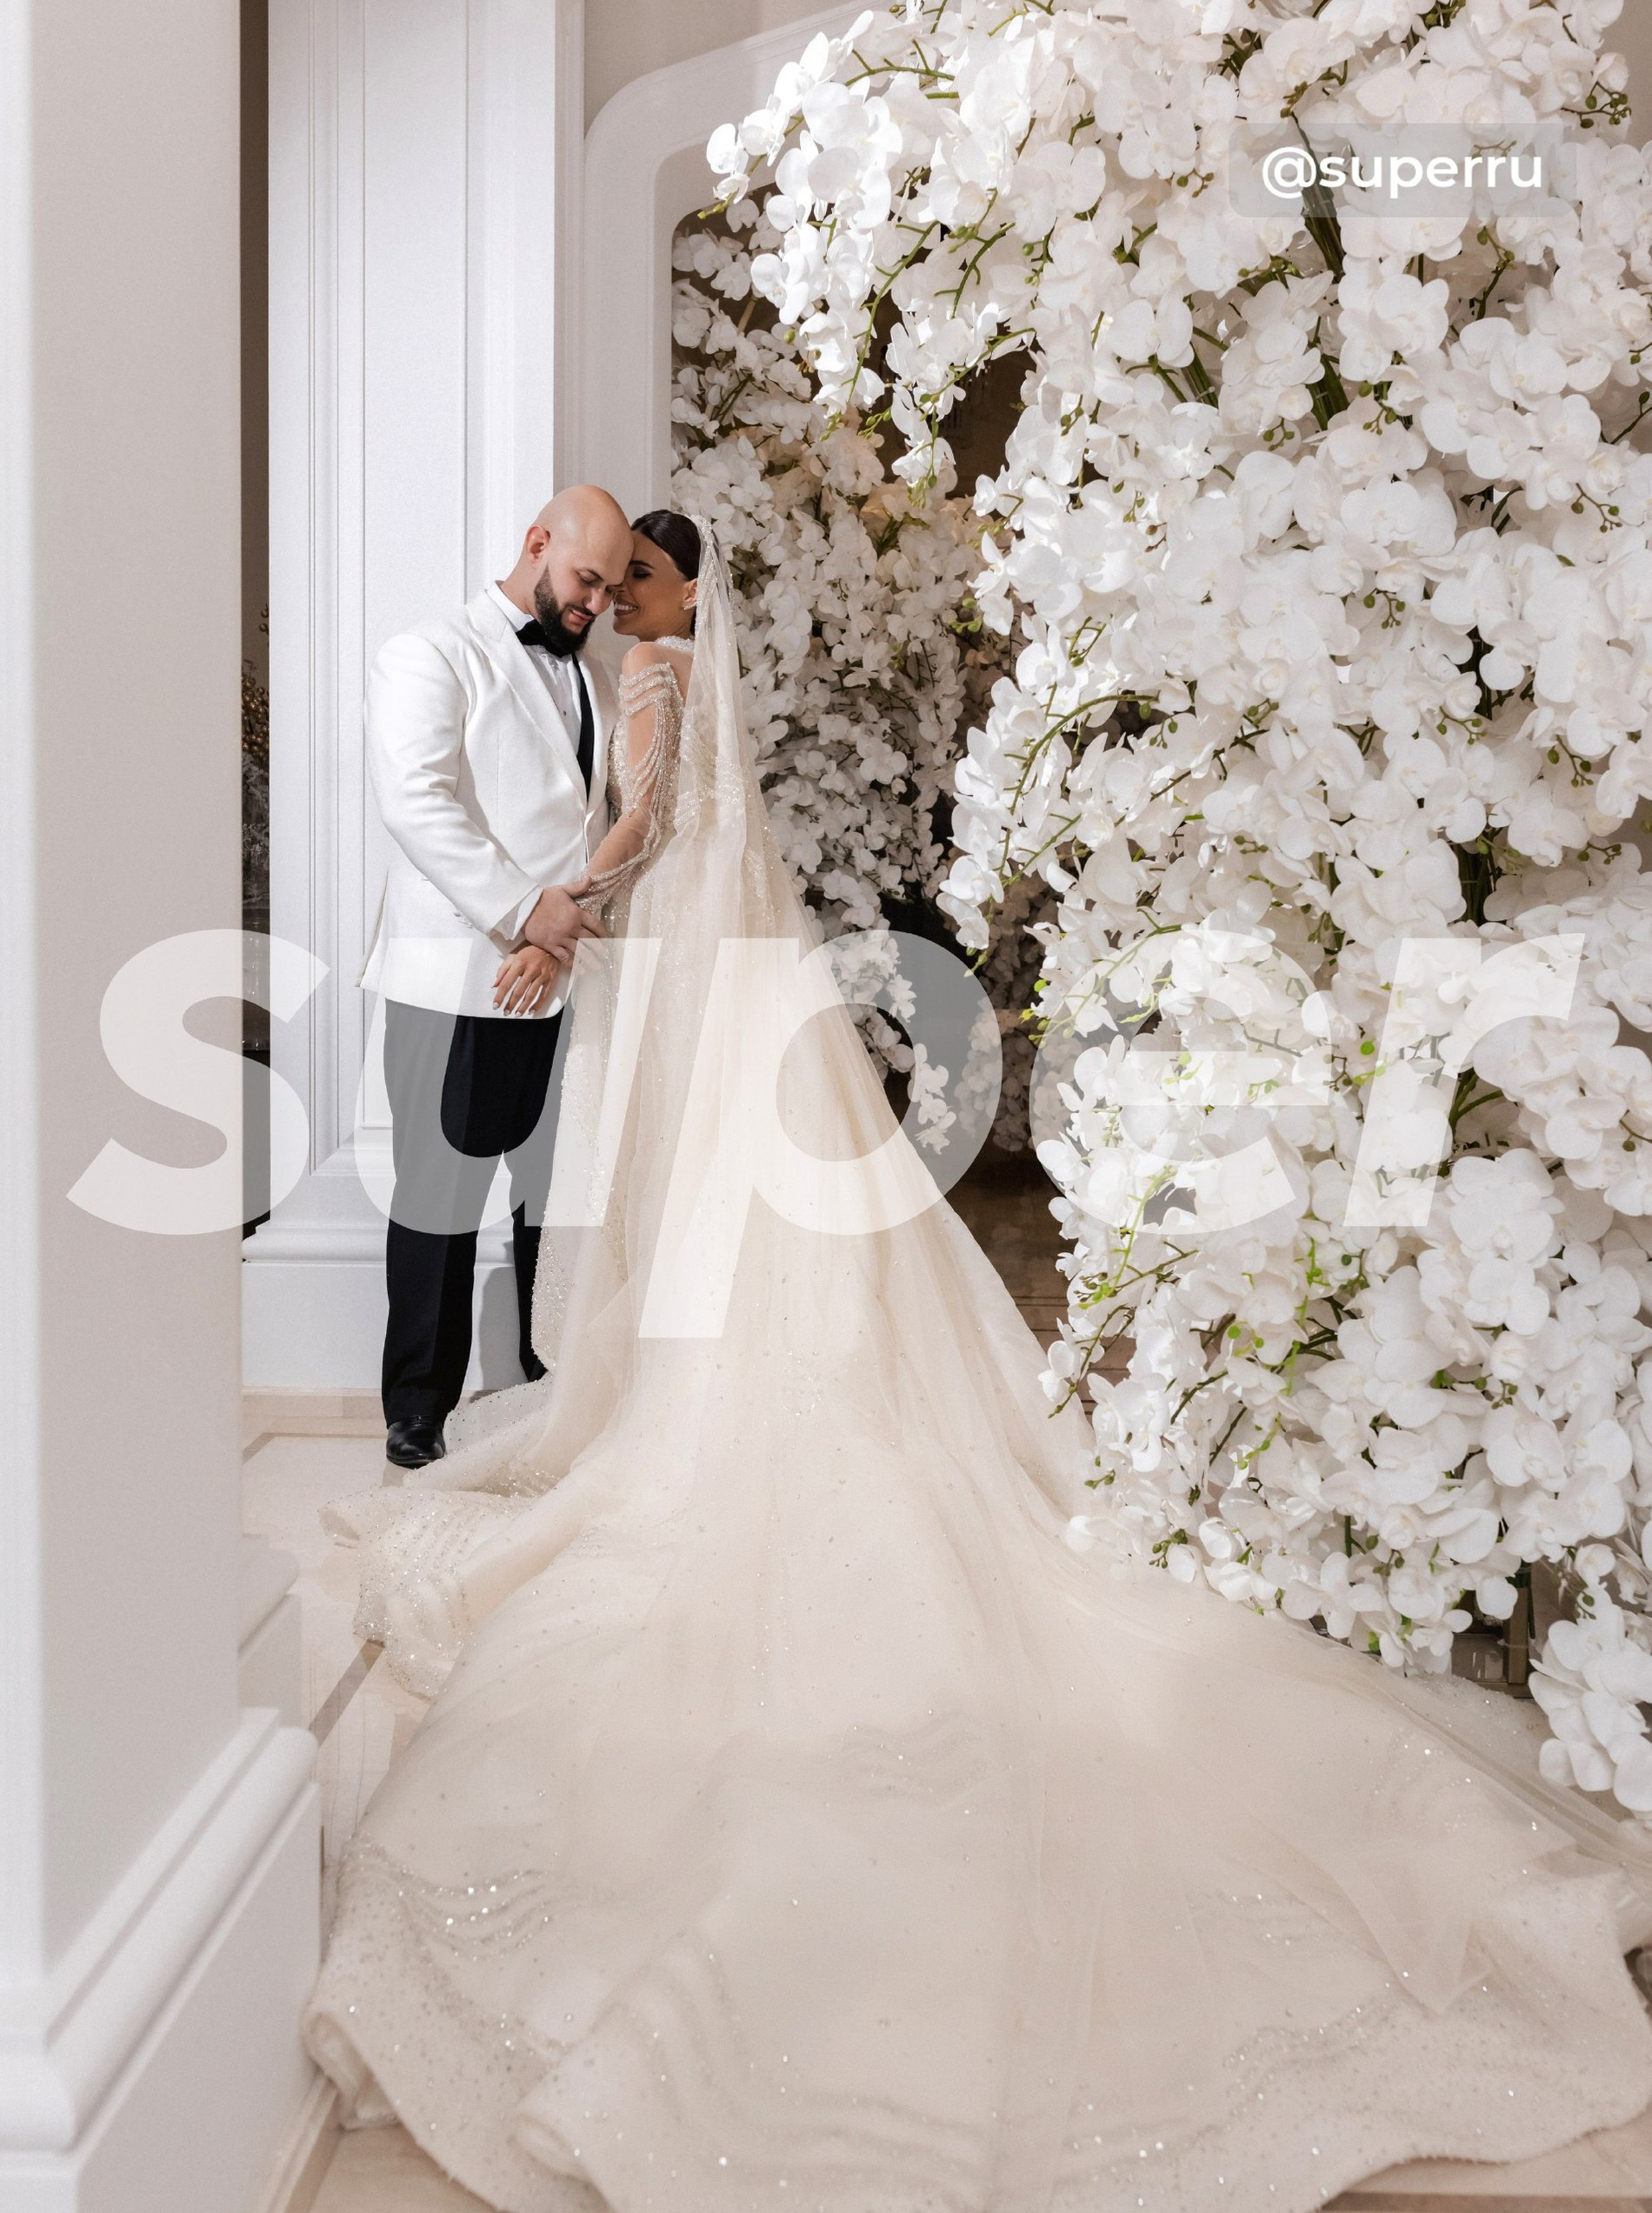 Оксана Самойлова и Джиган в свадебных образах
Фото: Super 